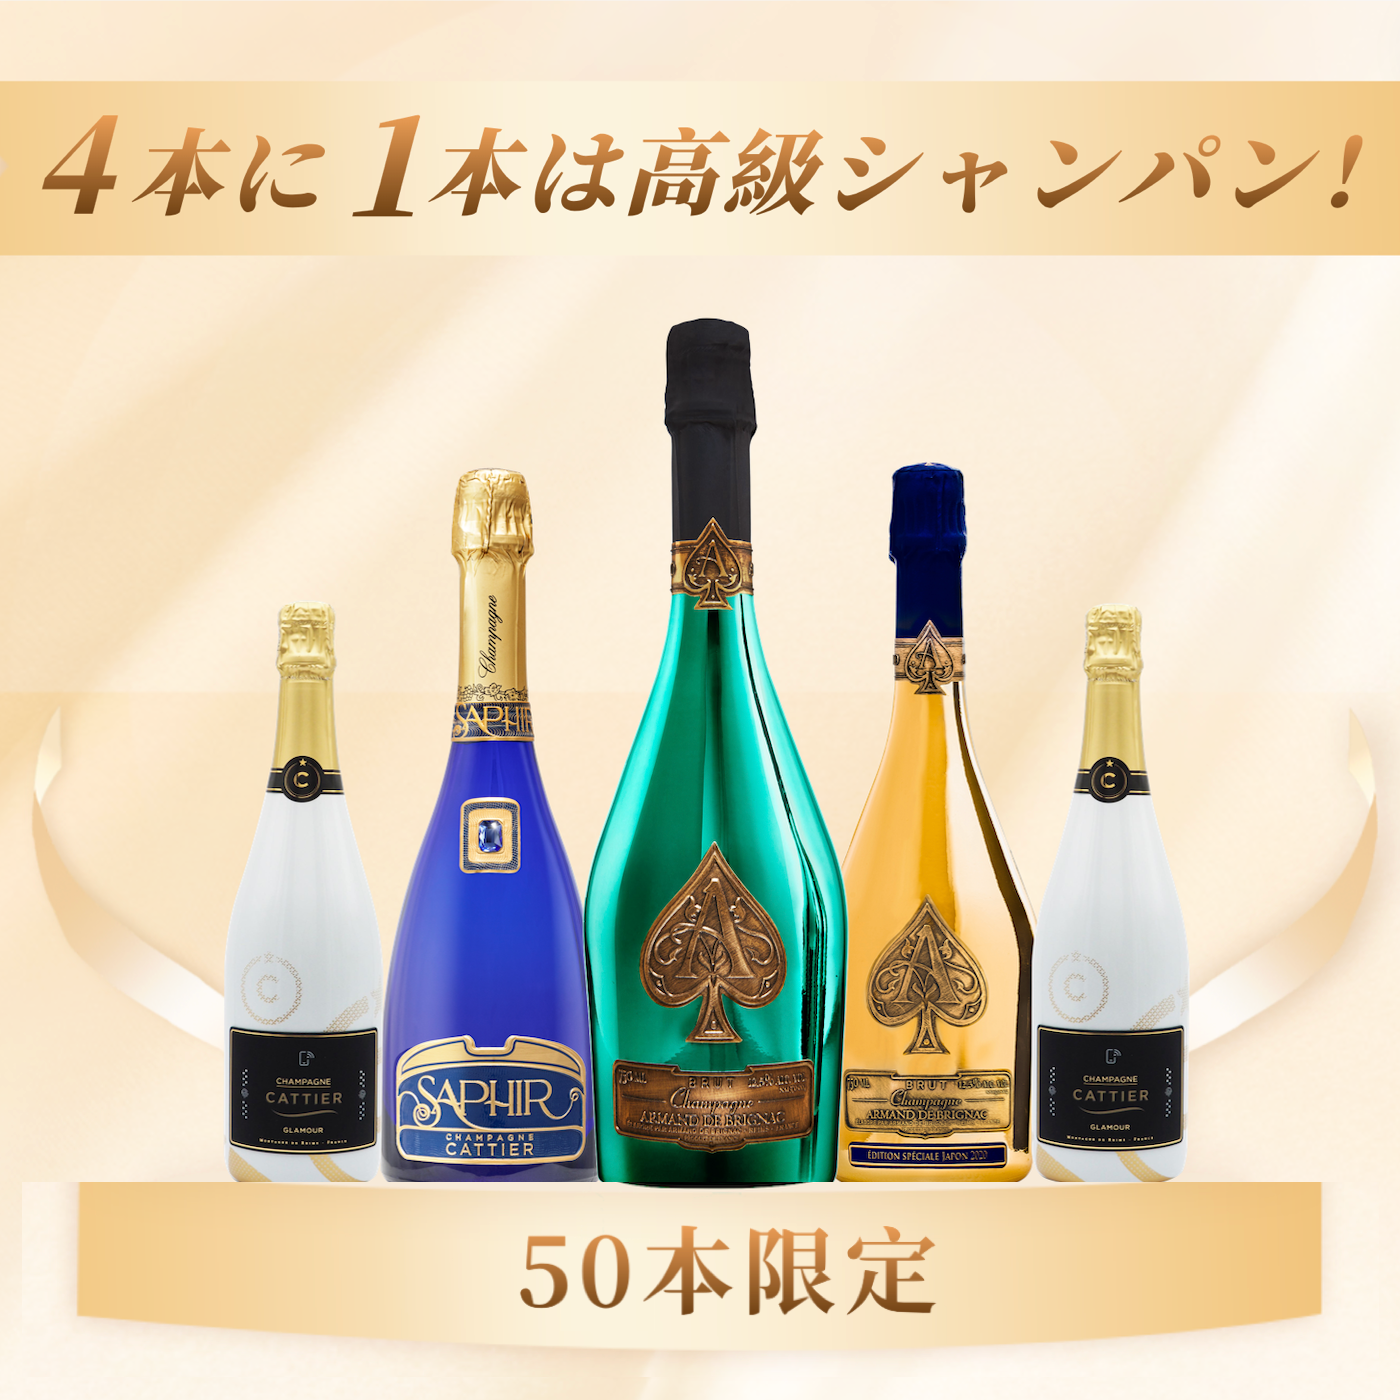 アルマンド ゴールド スペシャルジャパンエディション2020 - 飲料/酒